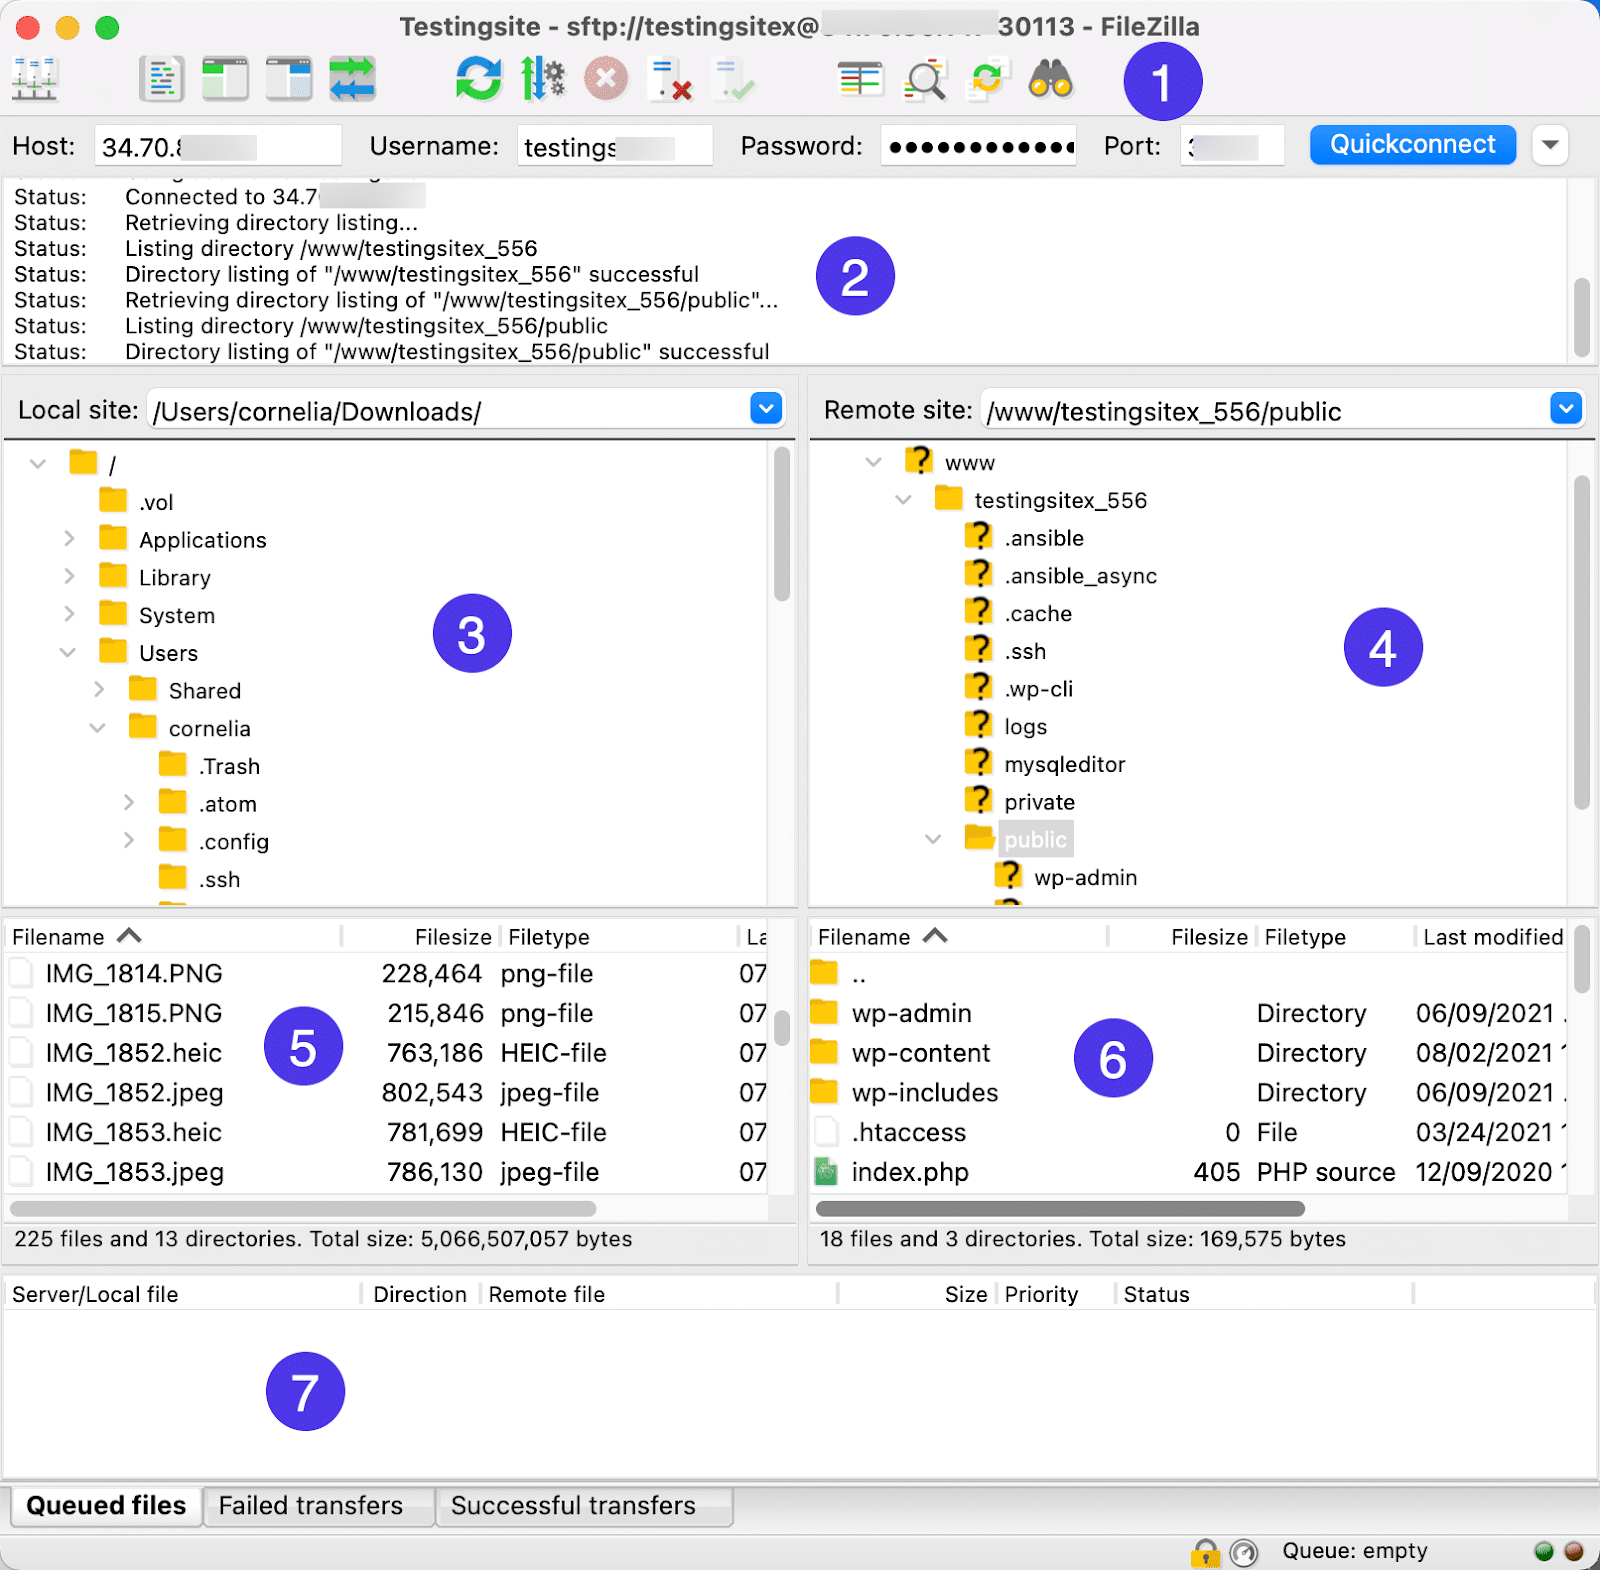 Schermata intera di FileZilla con tutte le sue funzioni etichettate con un numero diverso.